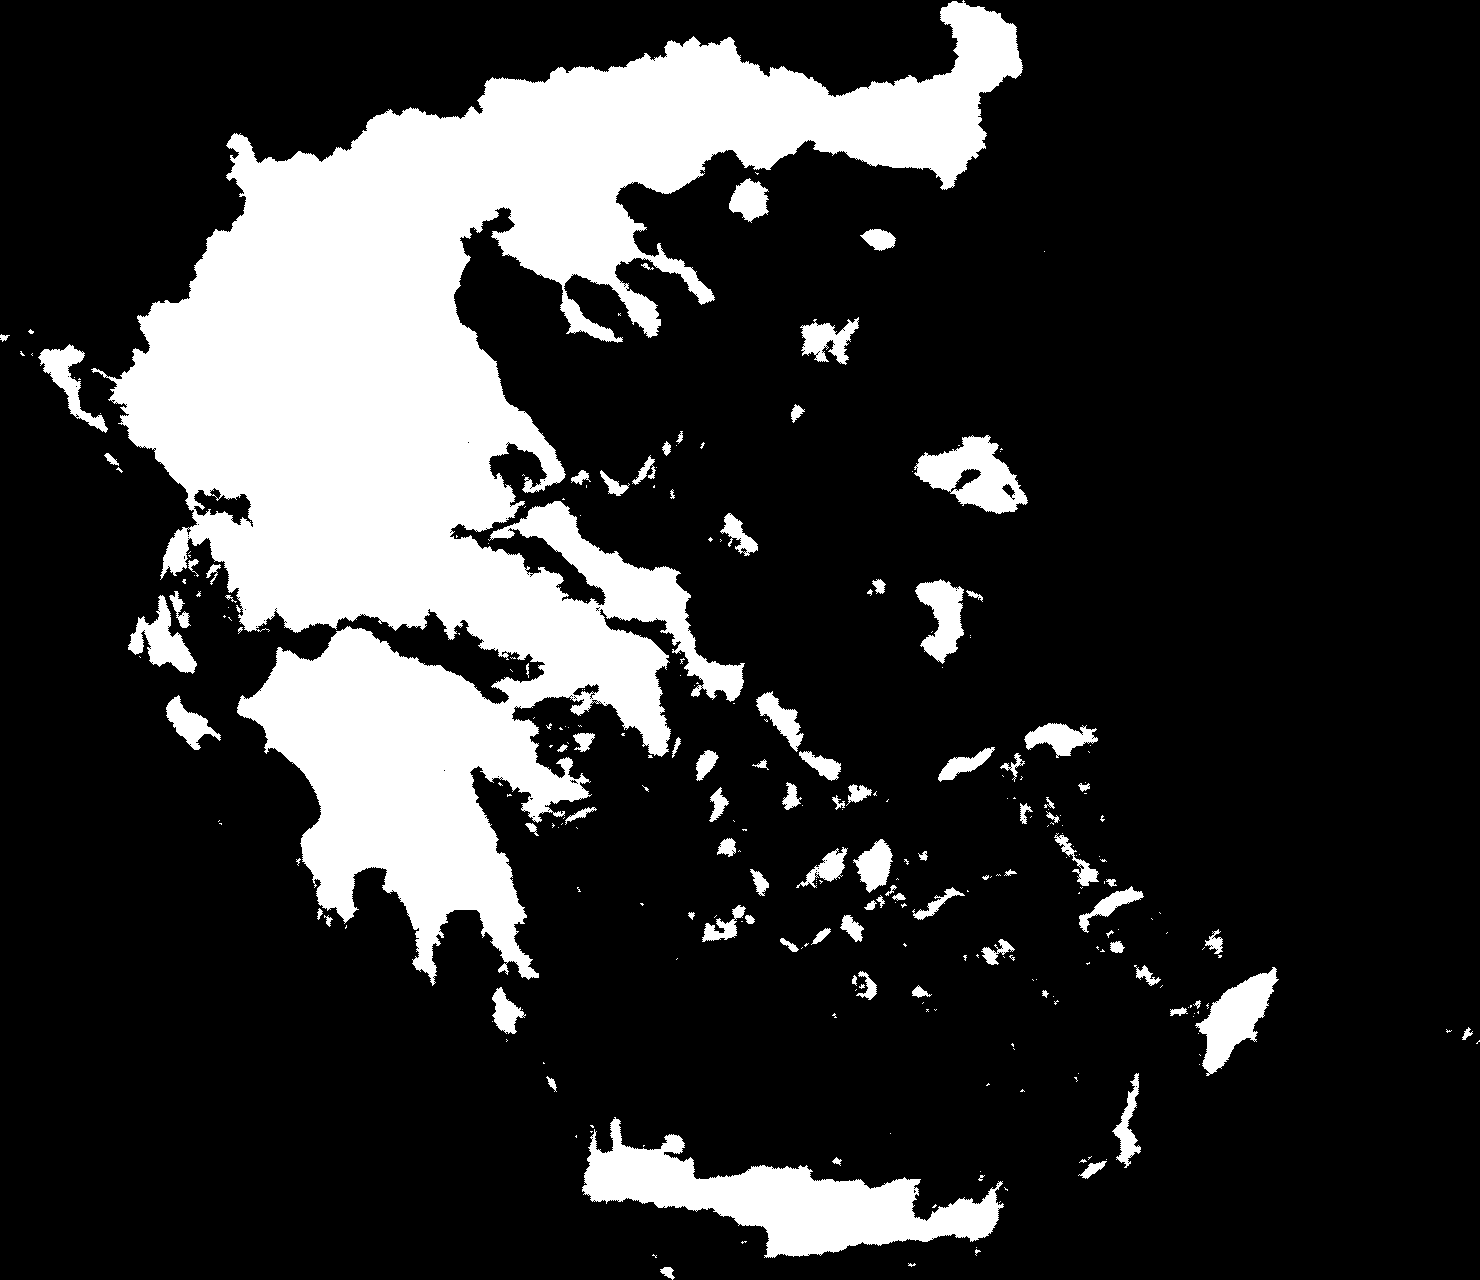 Σχετική Γεωγραφική περιοχή Το Ούζο Θράκης παράγεται στην Ελλάδα και ειδικότερον εντός των ορίων της Θράκης, η οποία περιλαμβάνει τις περιφερειακές ενότητες Ξάνθης, Ροδόπης και Έβρου της περιφέρειας